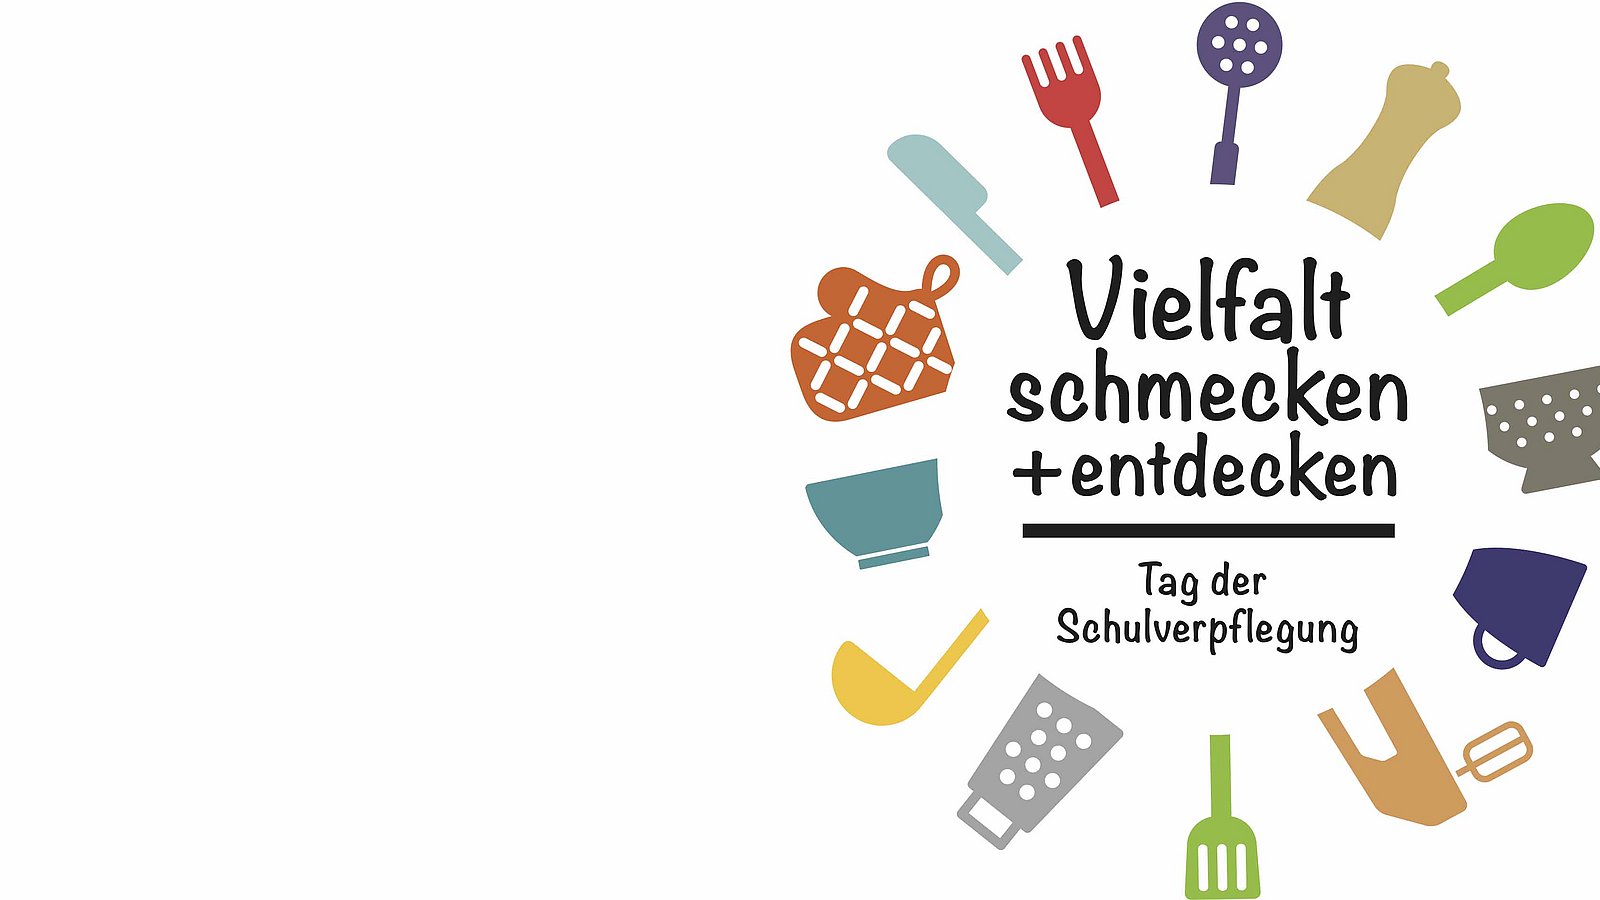 Logo Tag der Schulverpflegung "Vielfalt schmecken und entdecken/Tag der Schulverpflegung"